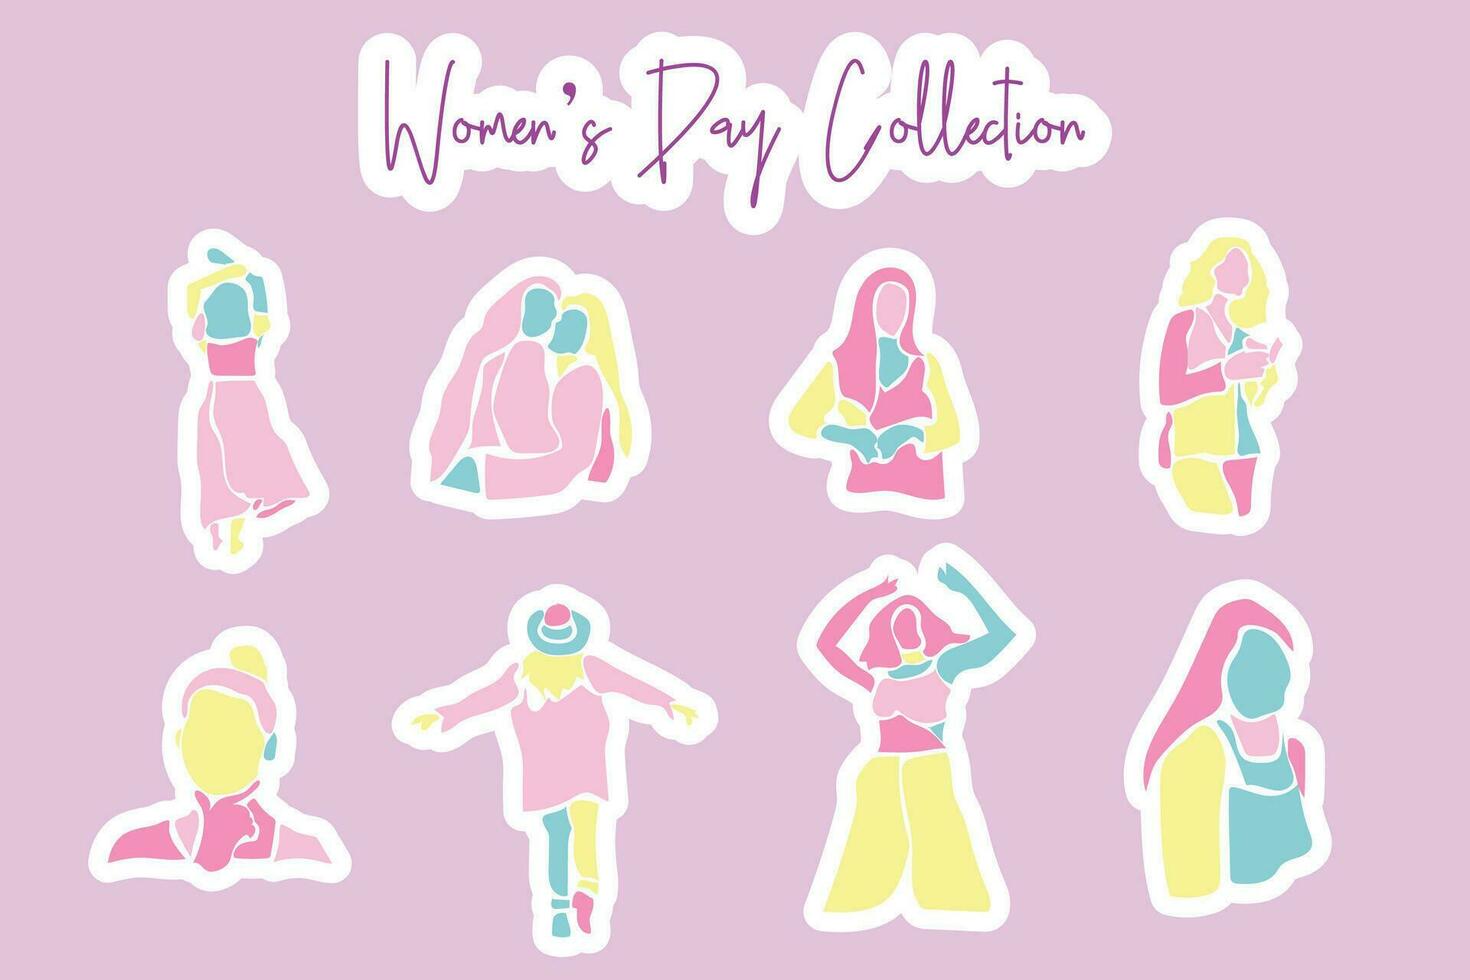 vector conjunto colección de De las mujeres día elementos en varios estilos y sombras de rosado